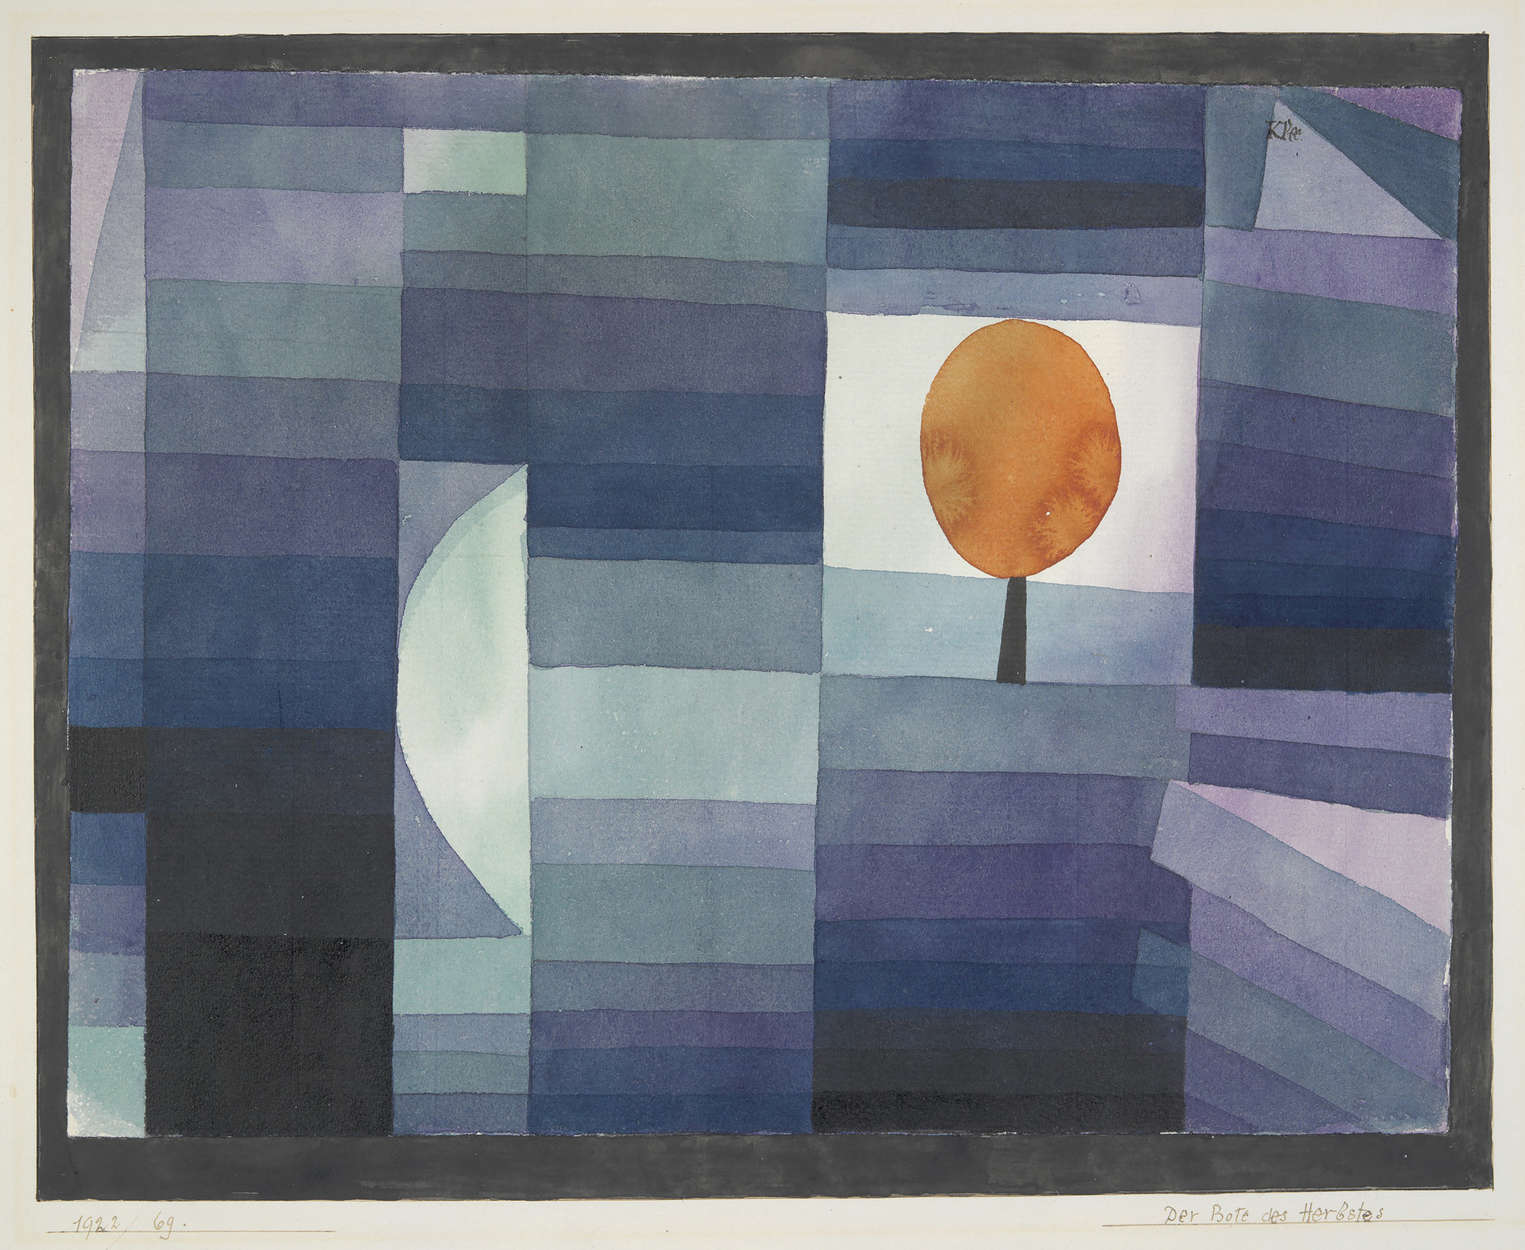             De voorbode van de herfst" muurschildering van Paul Klee
        